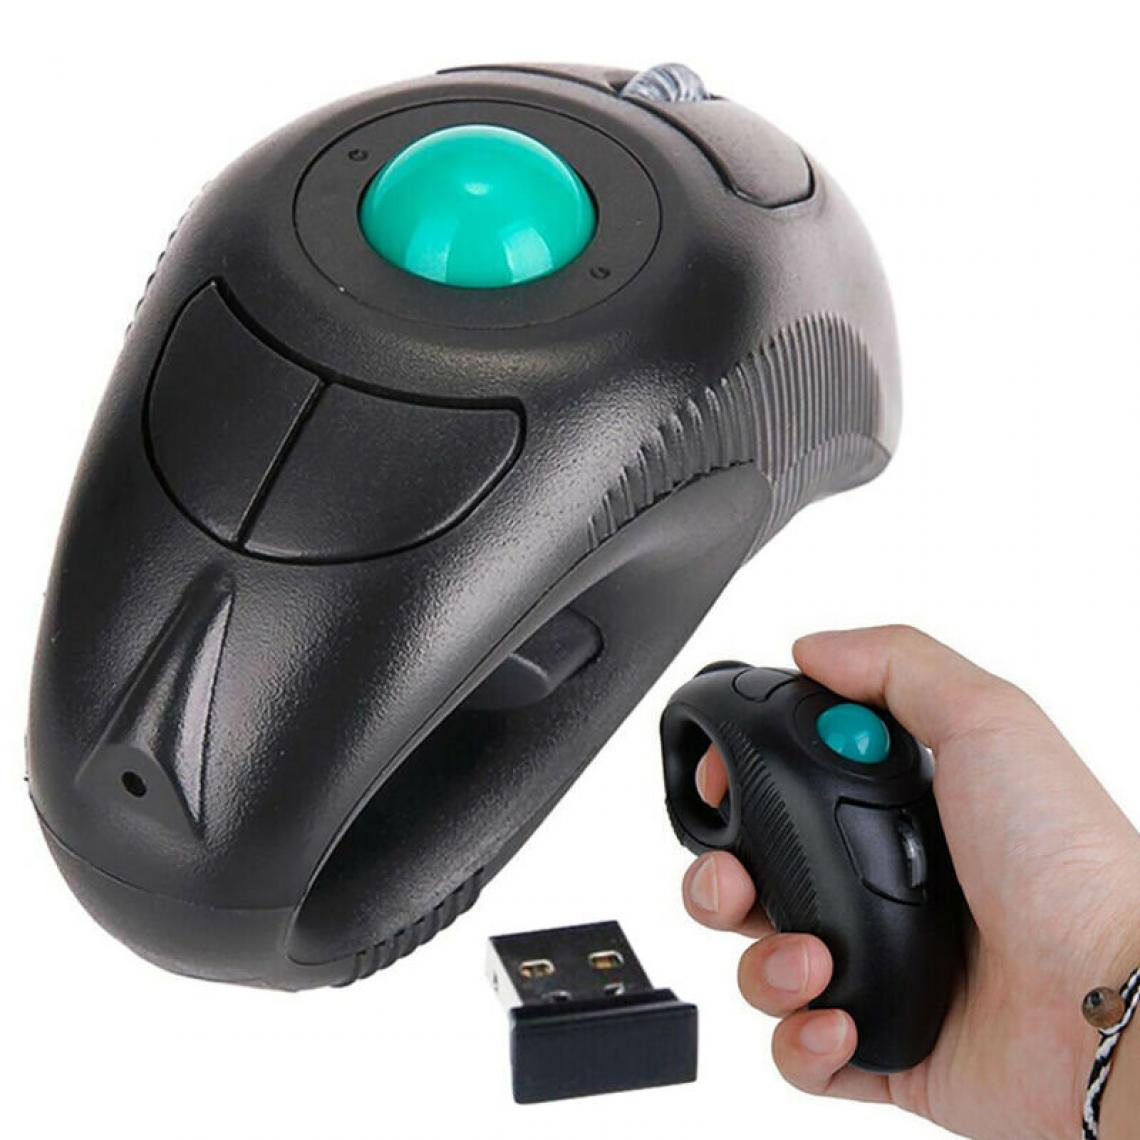 Universal - Récepteur USB pour PC sans fil, ordinateur portable, trackball à doigt, souris intelligente. - Souris